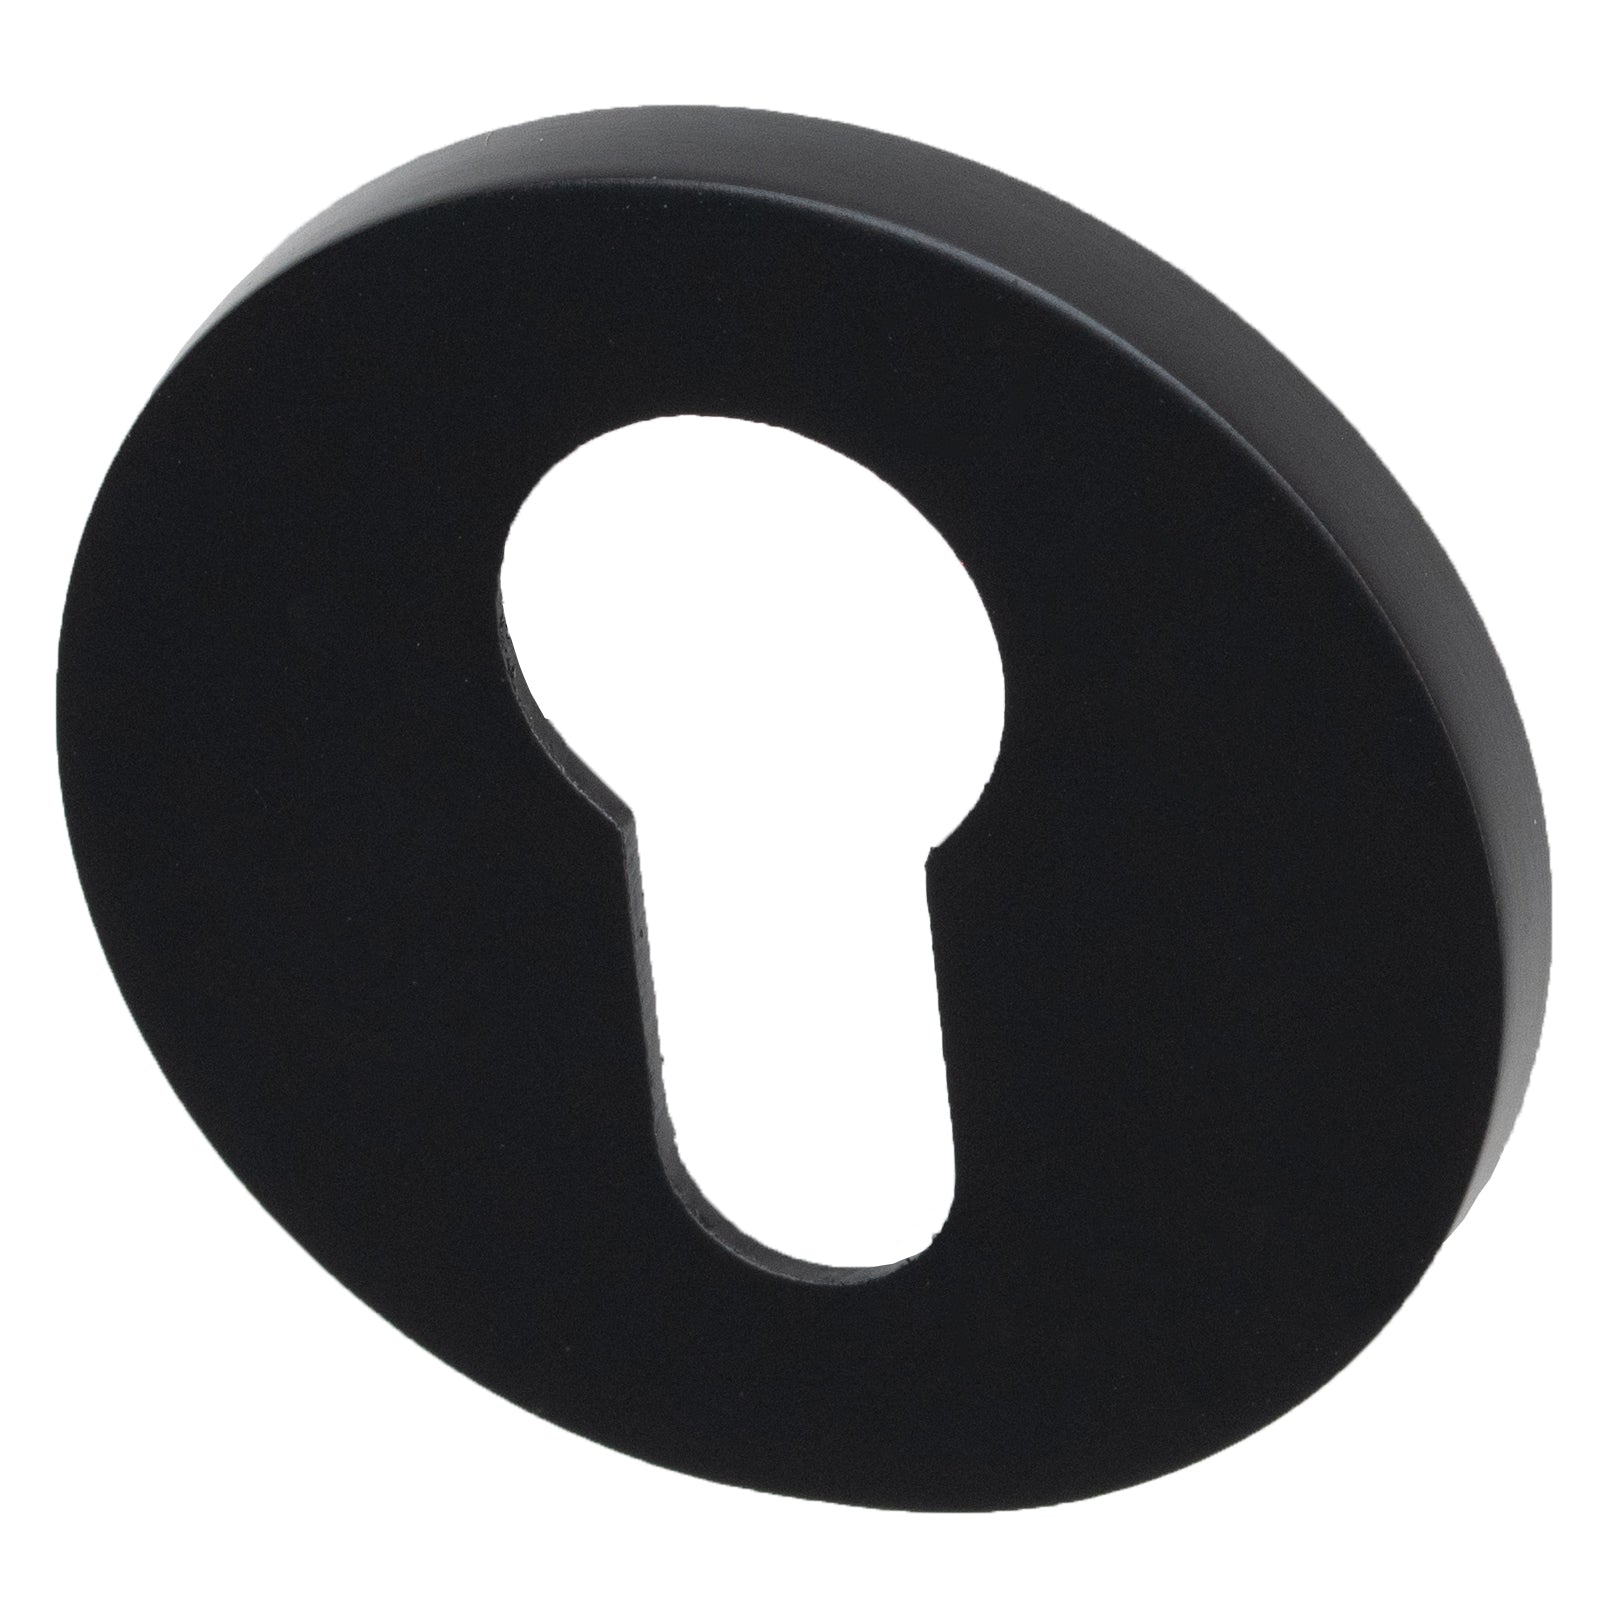 Tupai round euro profile escutcheon in Black Pearl Finish SHOW